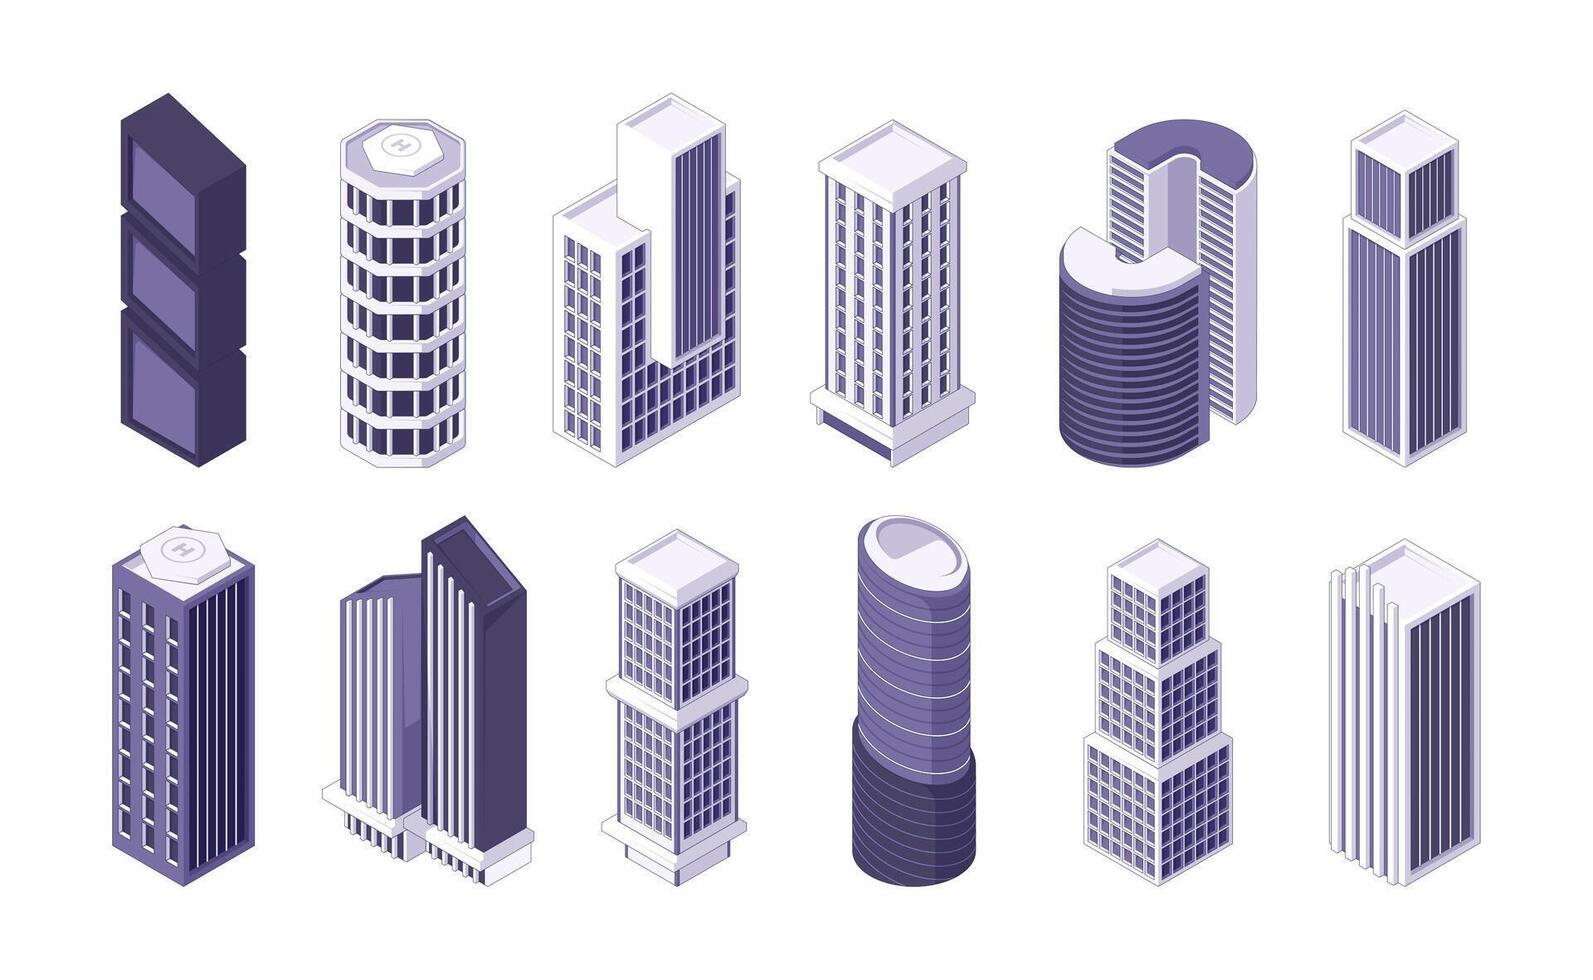 isométrica rascacielos moderno ciudad edificios en isometría, residencial Departamento negocio oficina torres plano estilo paisaje urbano concepto. vector conjunto